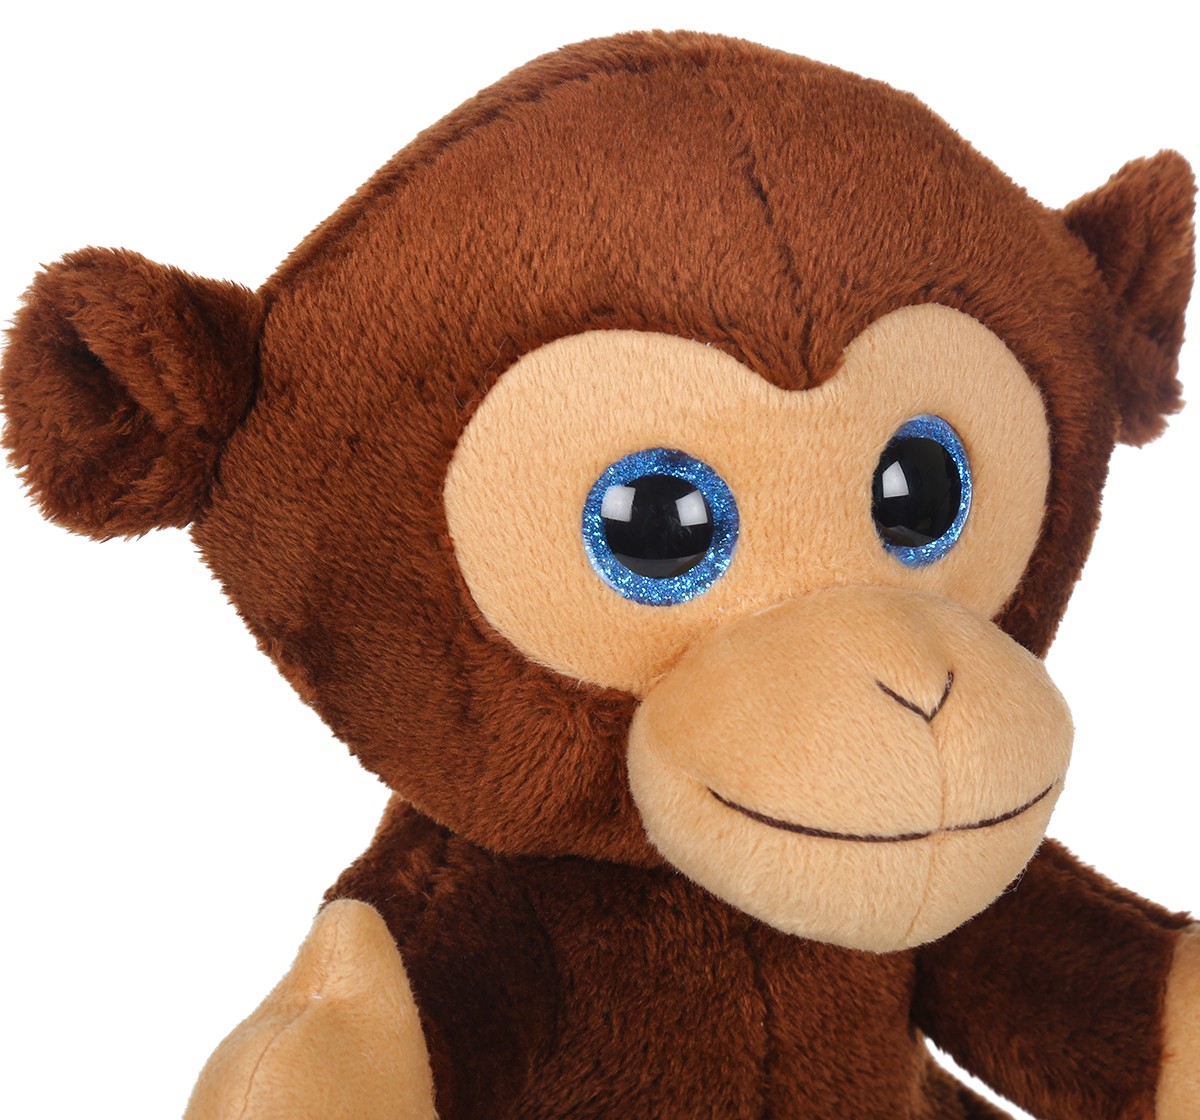 Mirada 25cm monkey with glitter eye Multicolor 3Y+